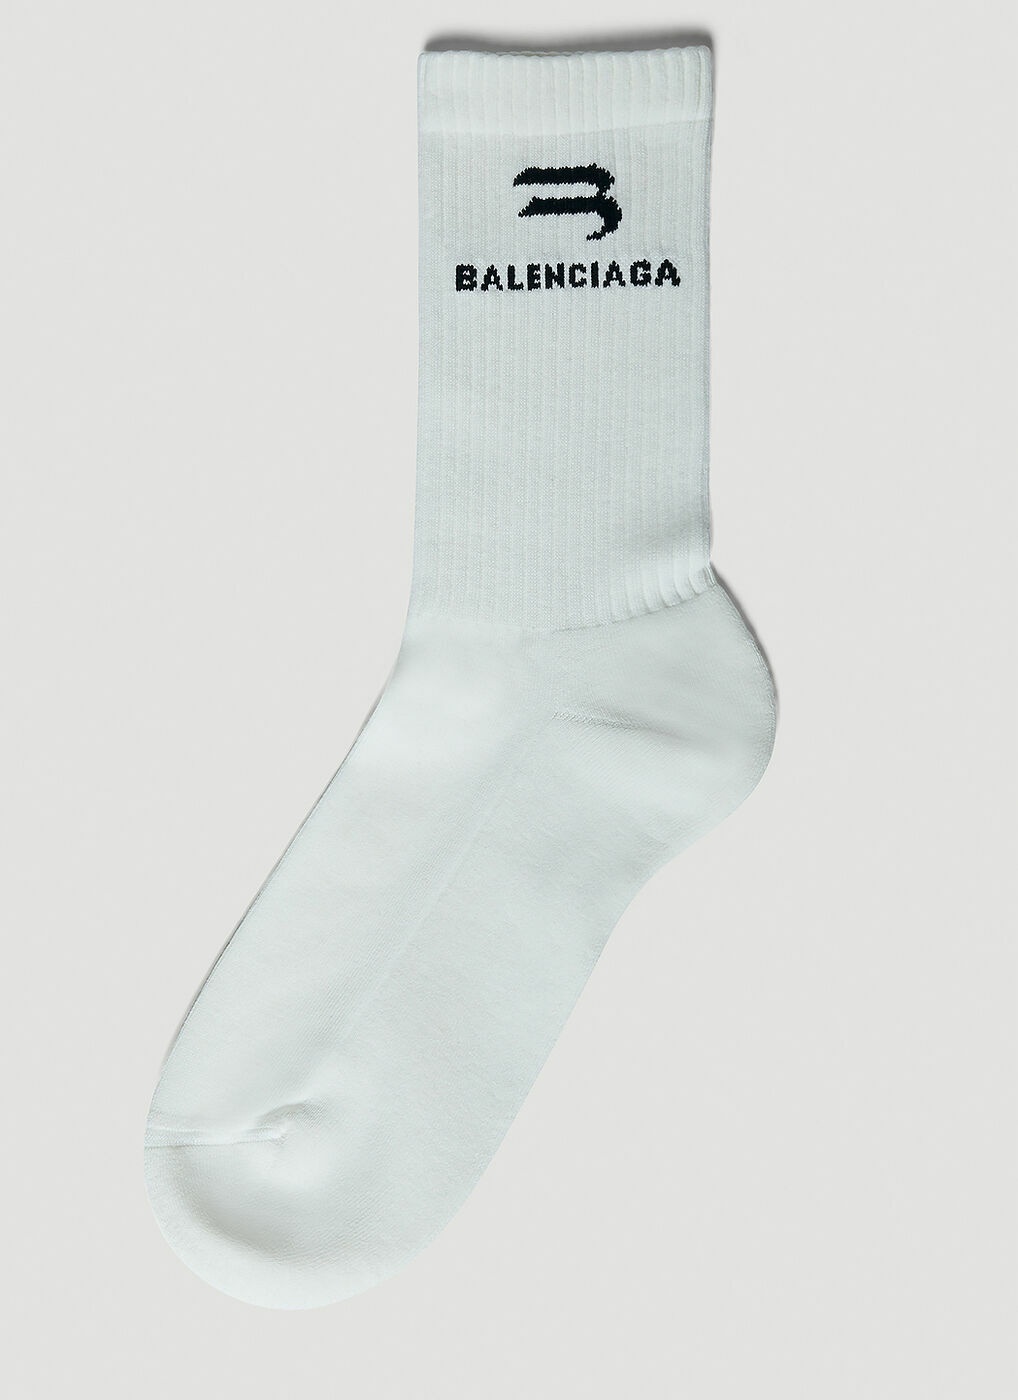 Glow In The Dark Socks in White Balenciaga